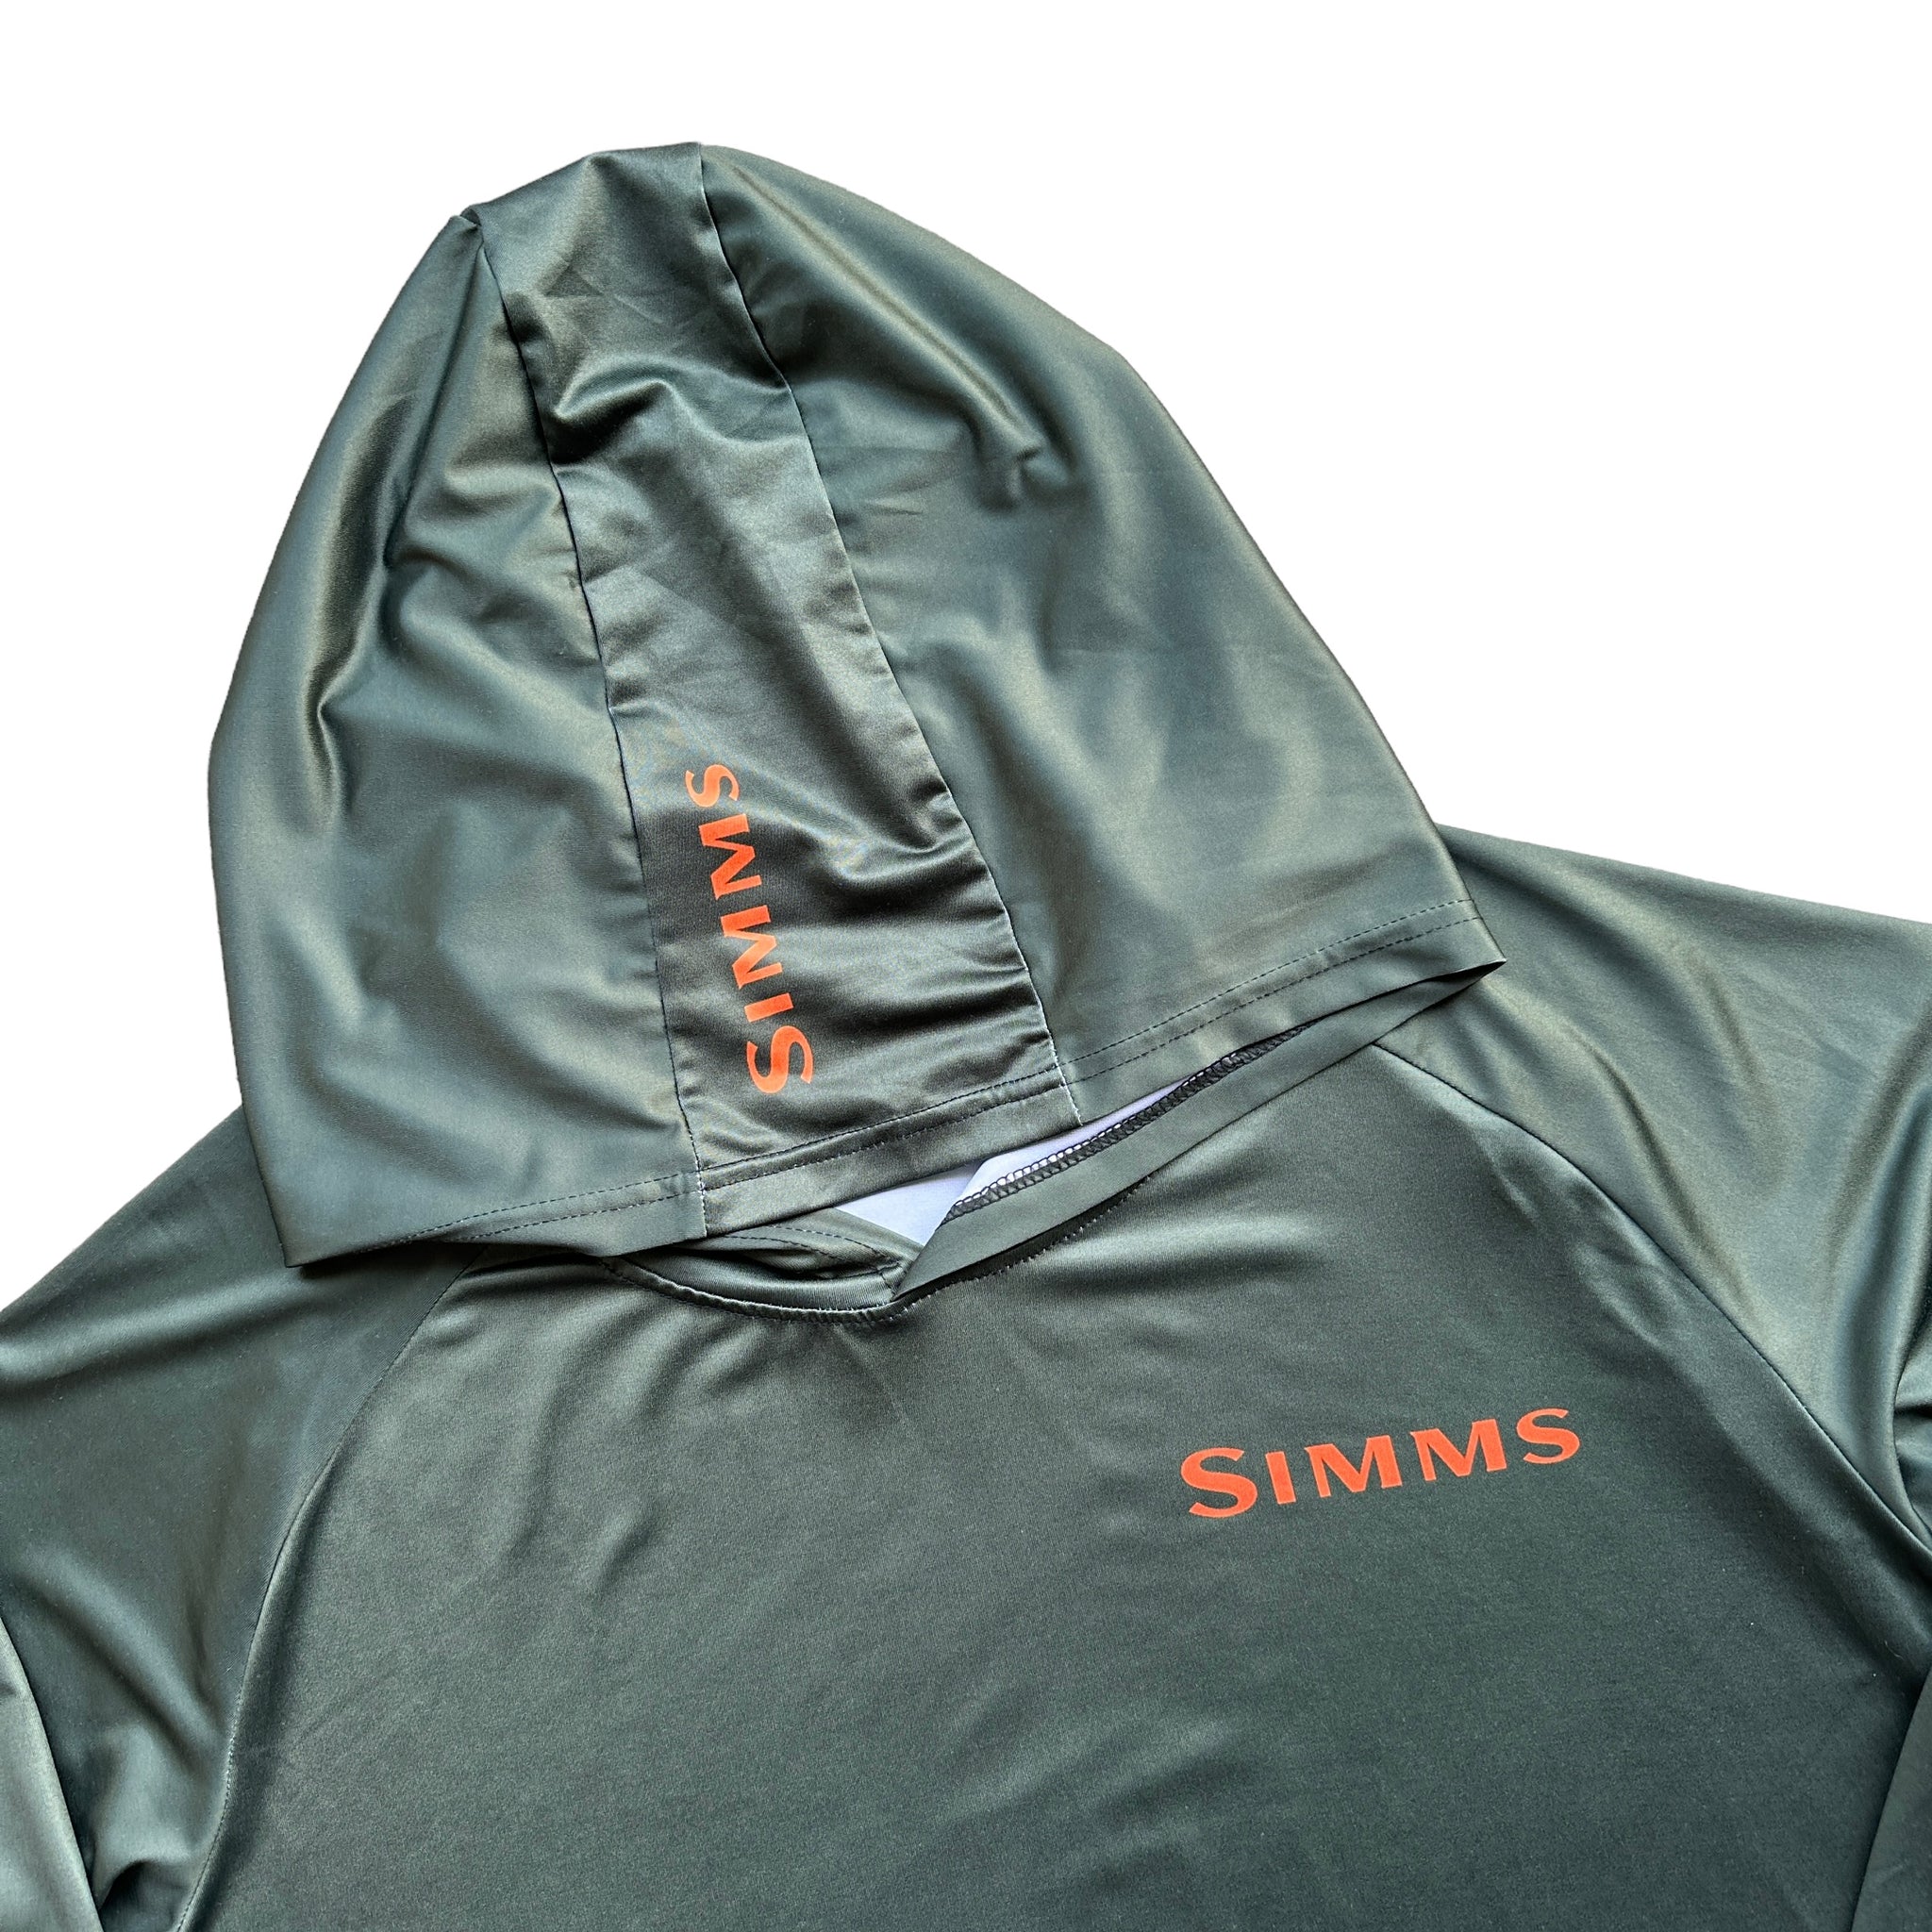 Simms fishing sun shirt XL